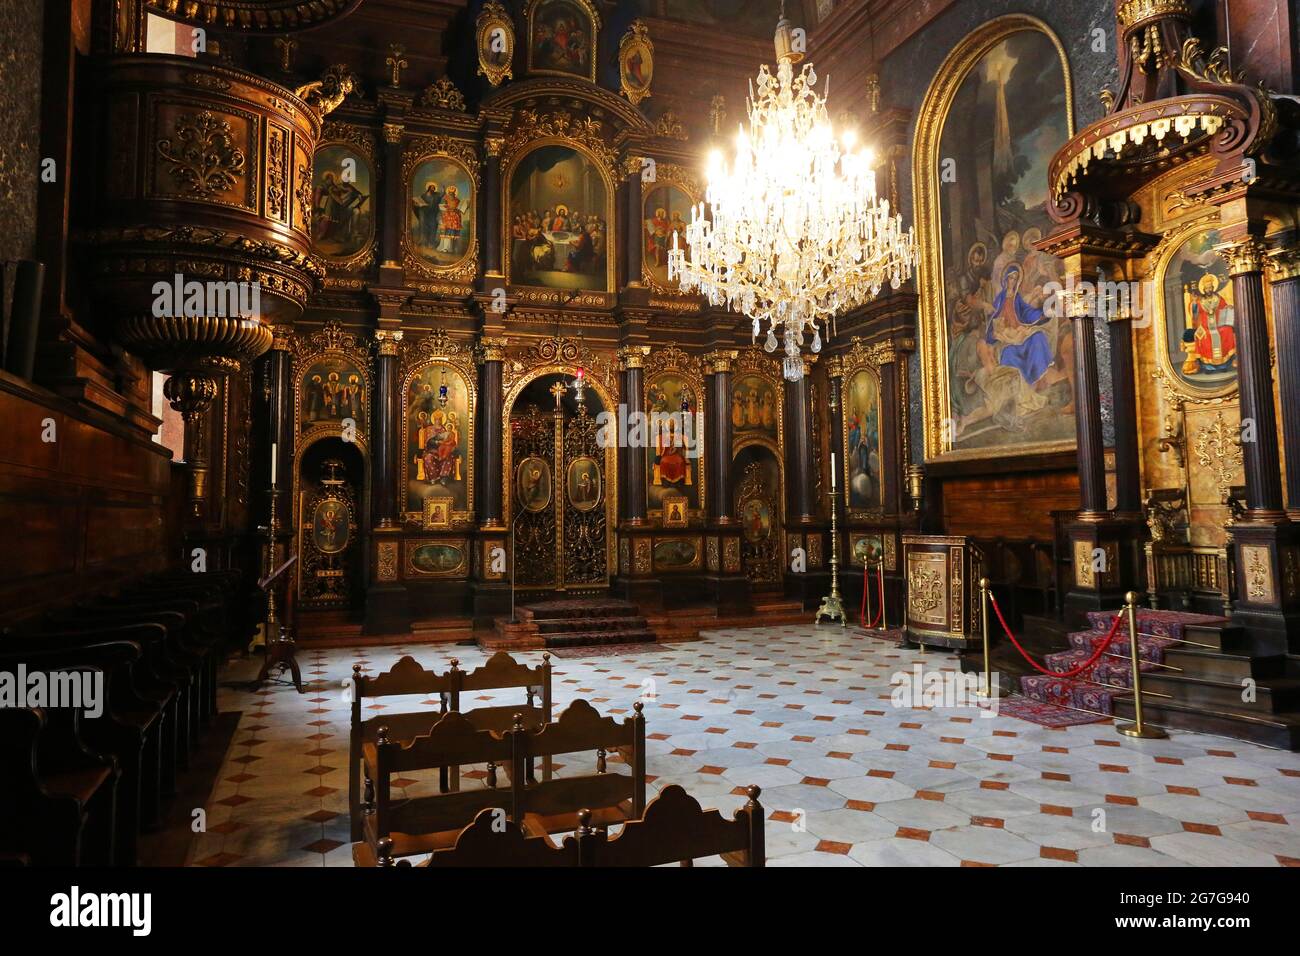 Wien Kirche, Wien, versteckte, wunderschöne Orthodoxe Kirche im Zentrum der Landeshauptstadt von Österreich, lädt ein zur Einkehr und Stille. Foto Stock